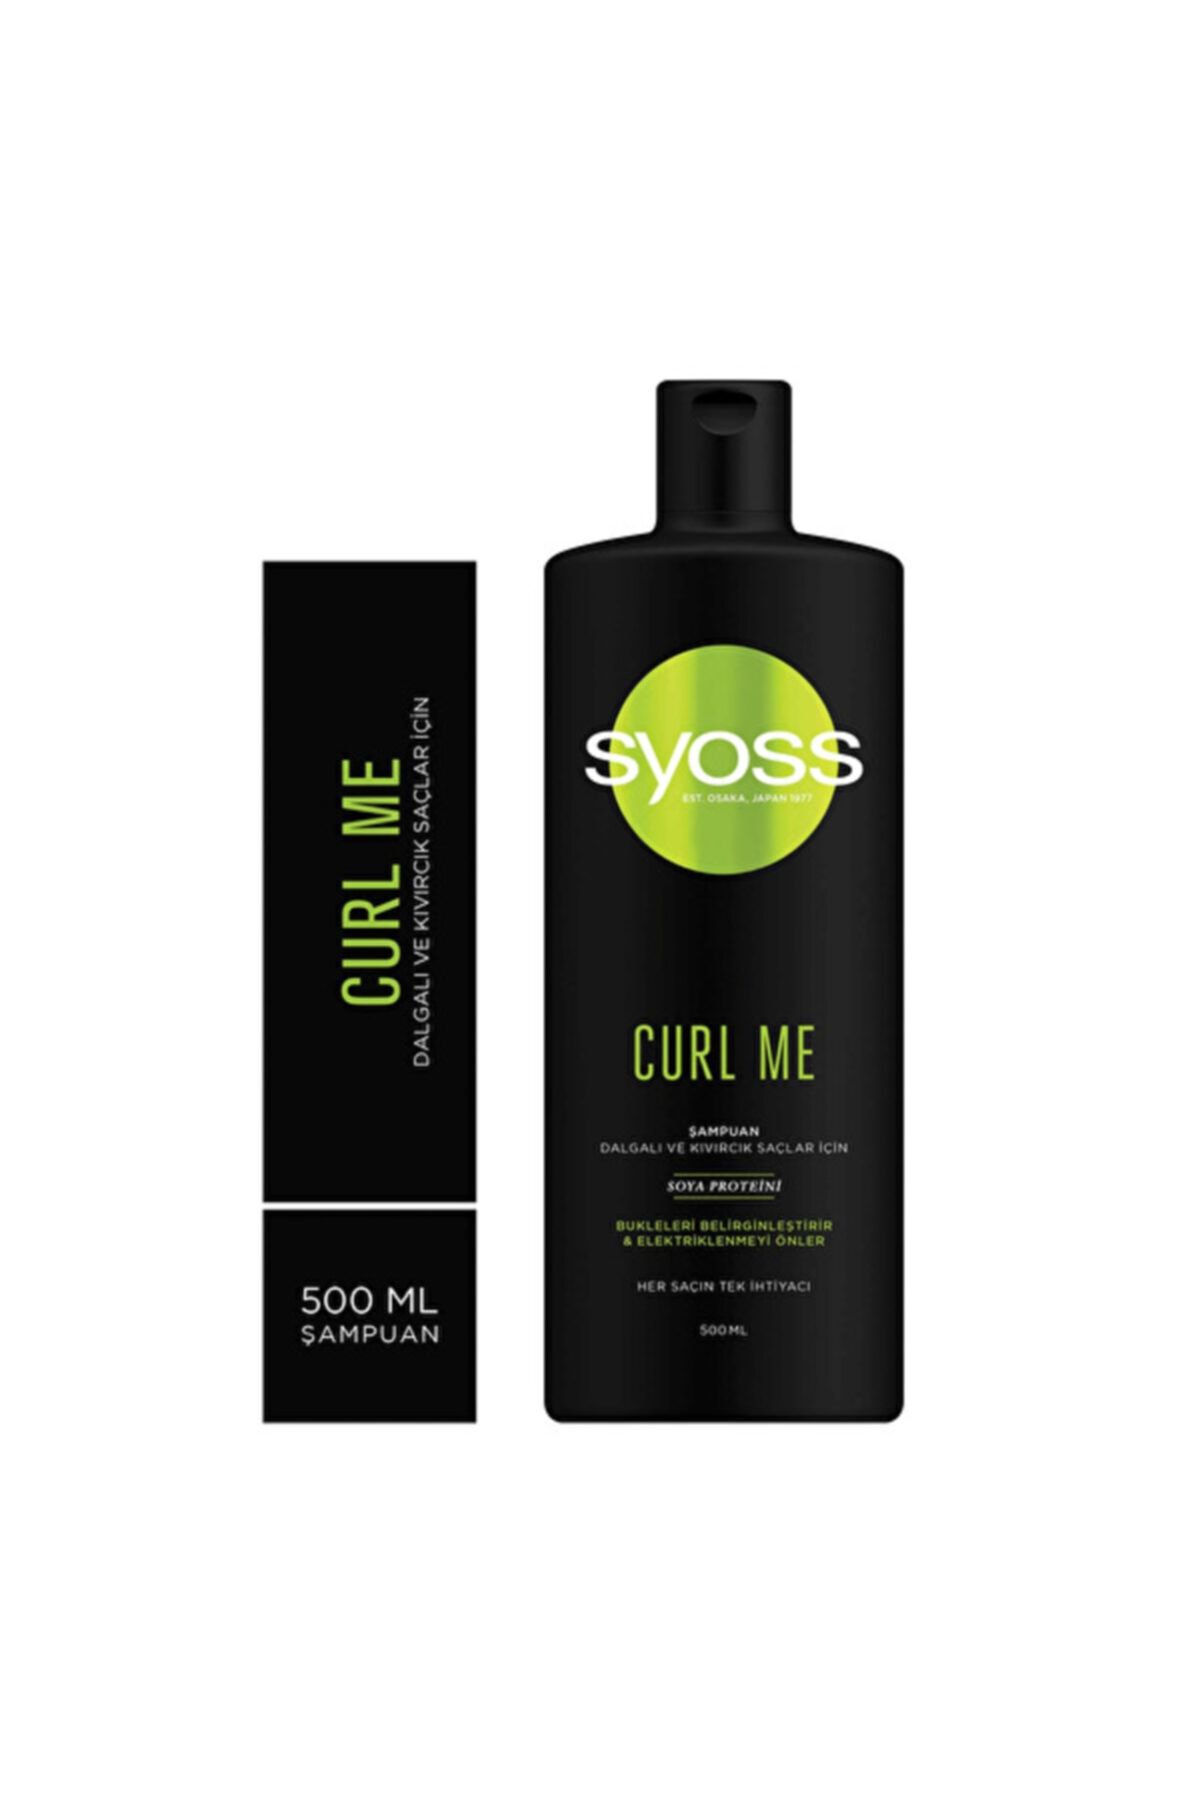 Syoss Curl Me Dalgalı Ve Kıvırcık Saçlar İçin Şampuan 500ml